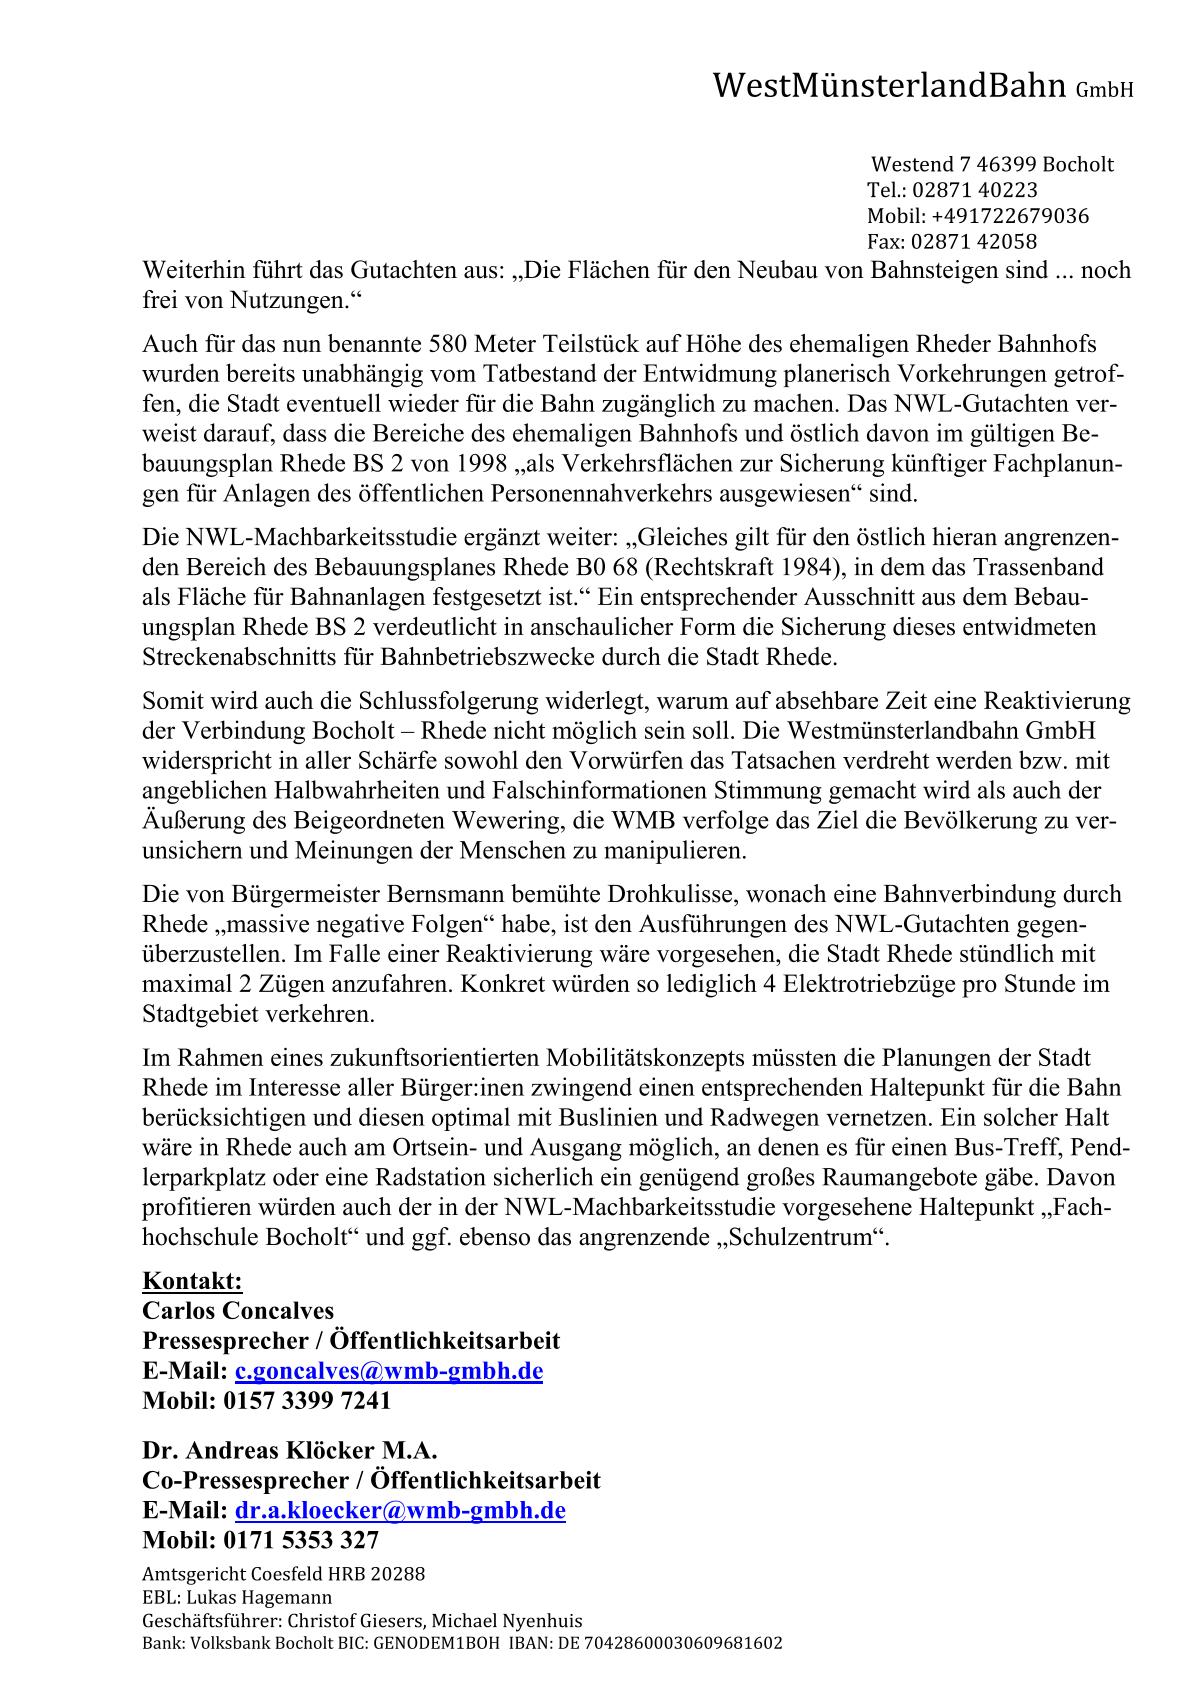 WMB-Pressemitteilung zum BBV-Artikel v. 24.10.2022 / Seite 2